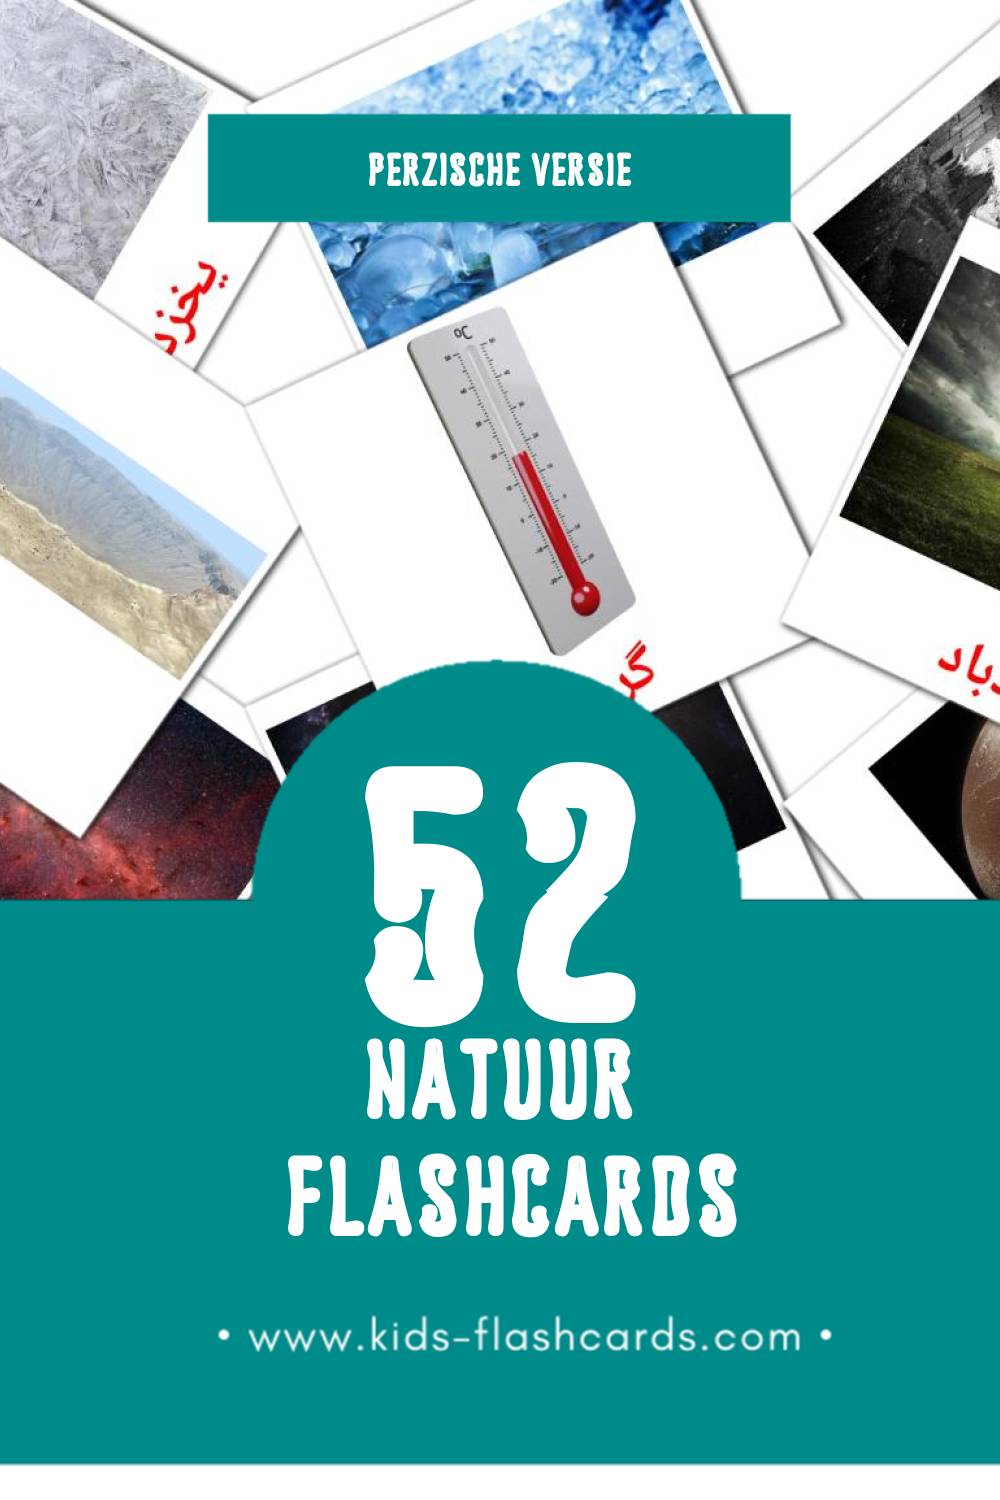 Visuele طبیعت Flashcards voor Kleuters (52 kaarten in het Perzisch)